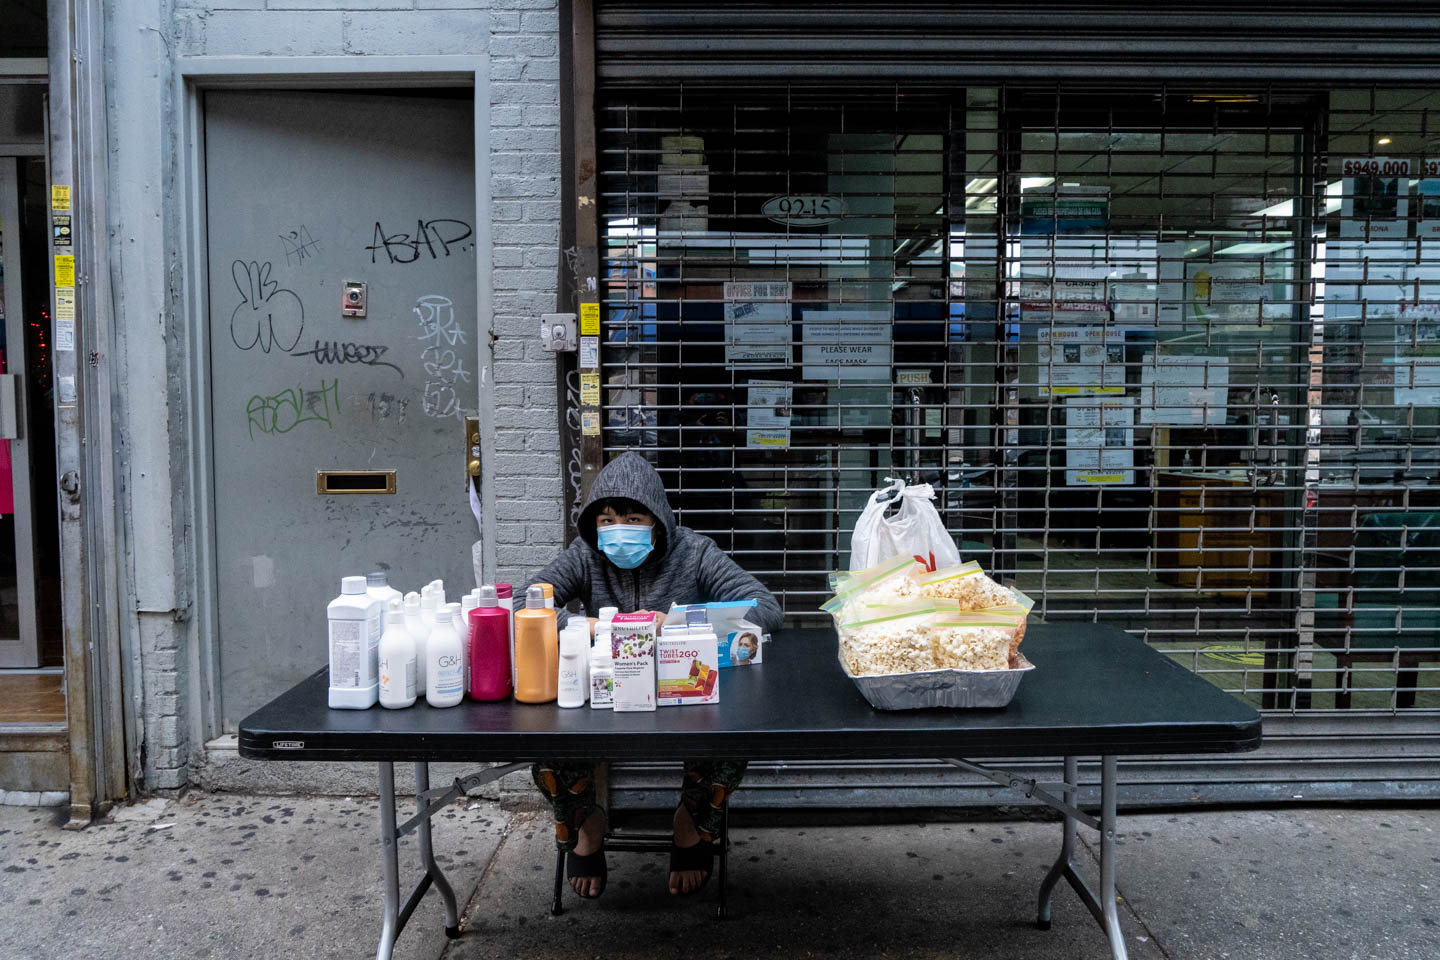 November 15, 2020: Child street vendor. 9215 Roosevelt Avenue, Queens, New York. © Camilo José Vergara